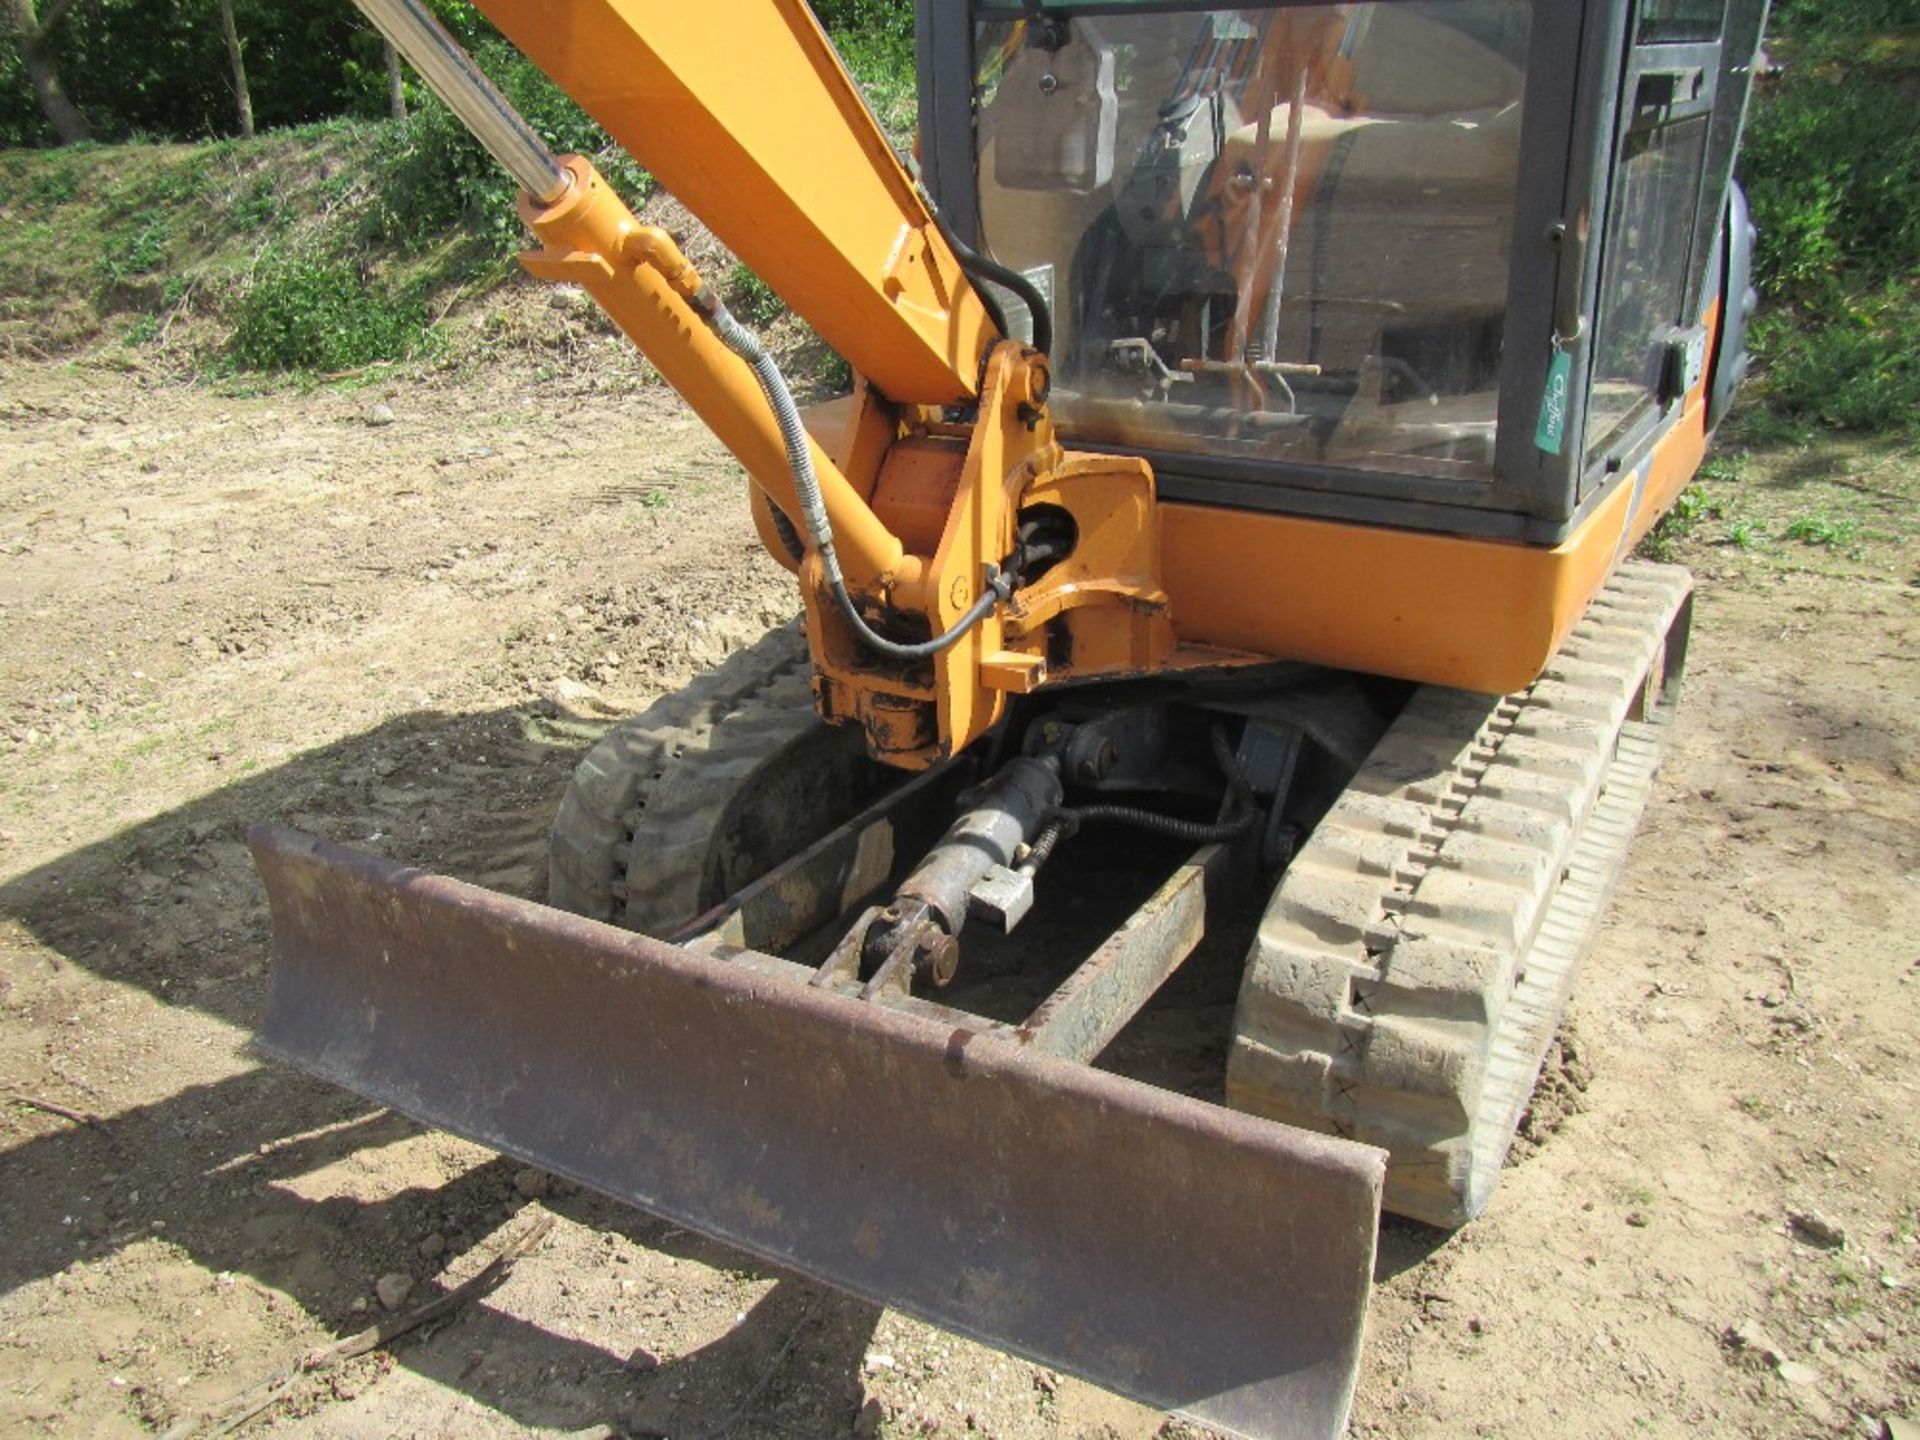 Case CX28 Tracked Excavator c/w 1 bucket - Image 3 of 6